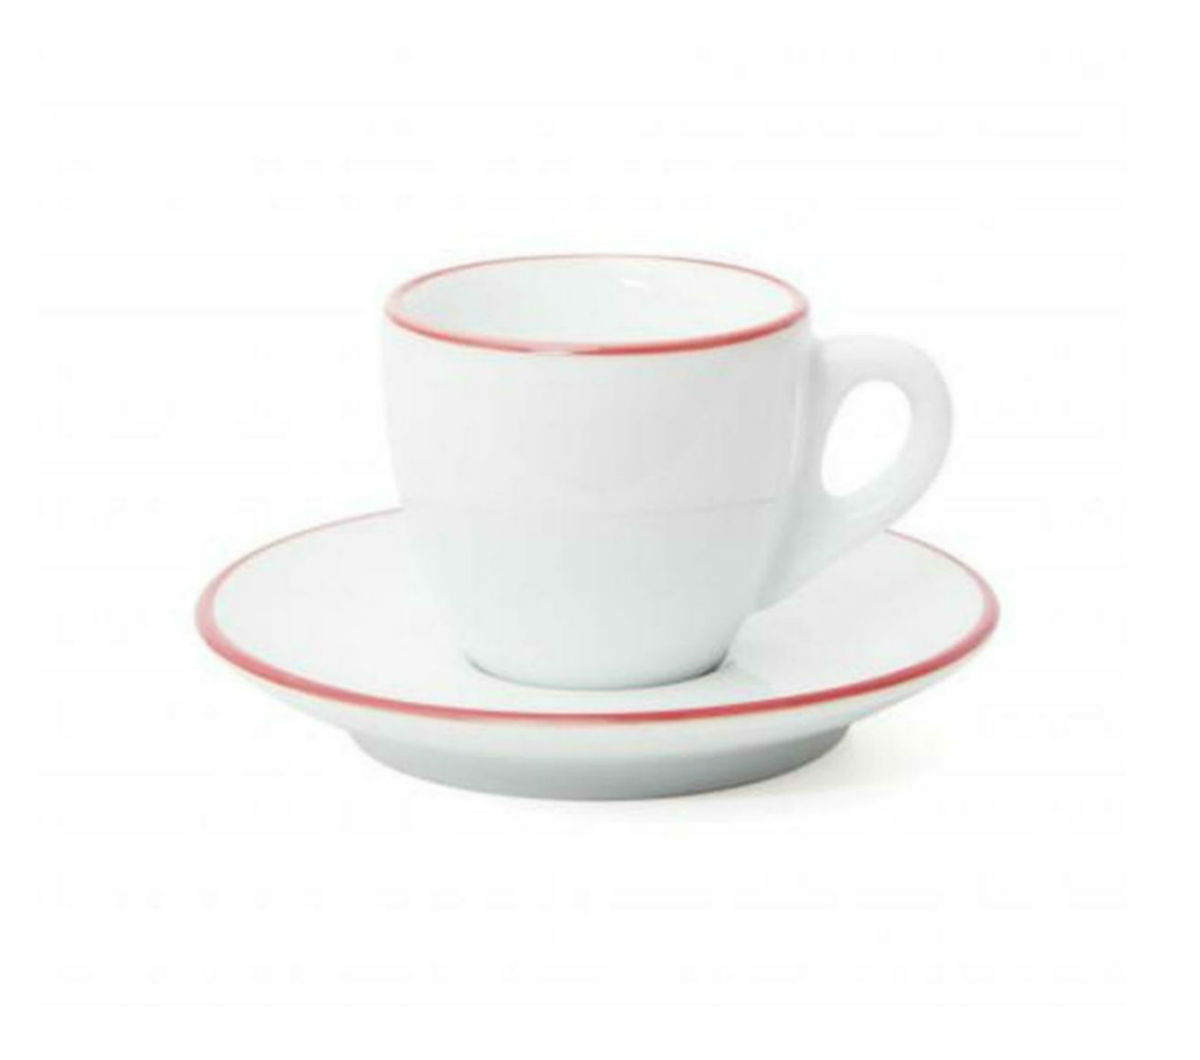 "PALERMO" RED RIM Espresso Cups 55ml